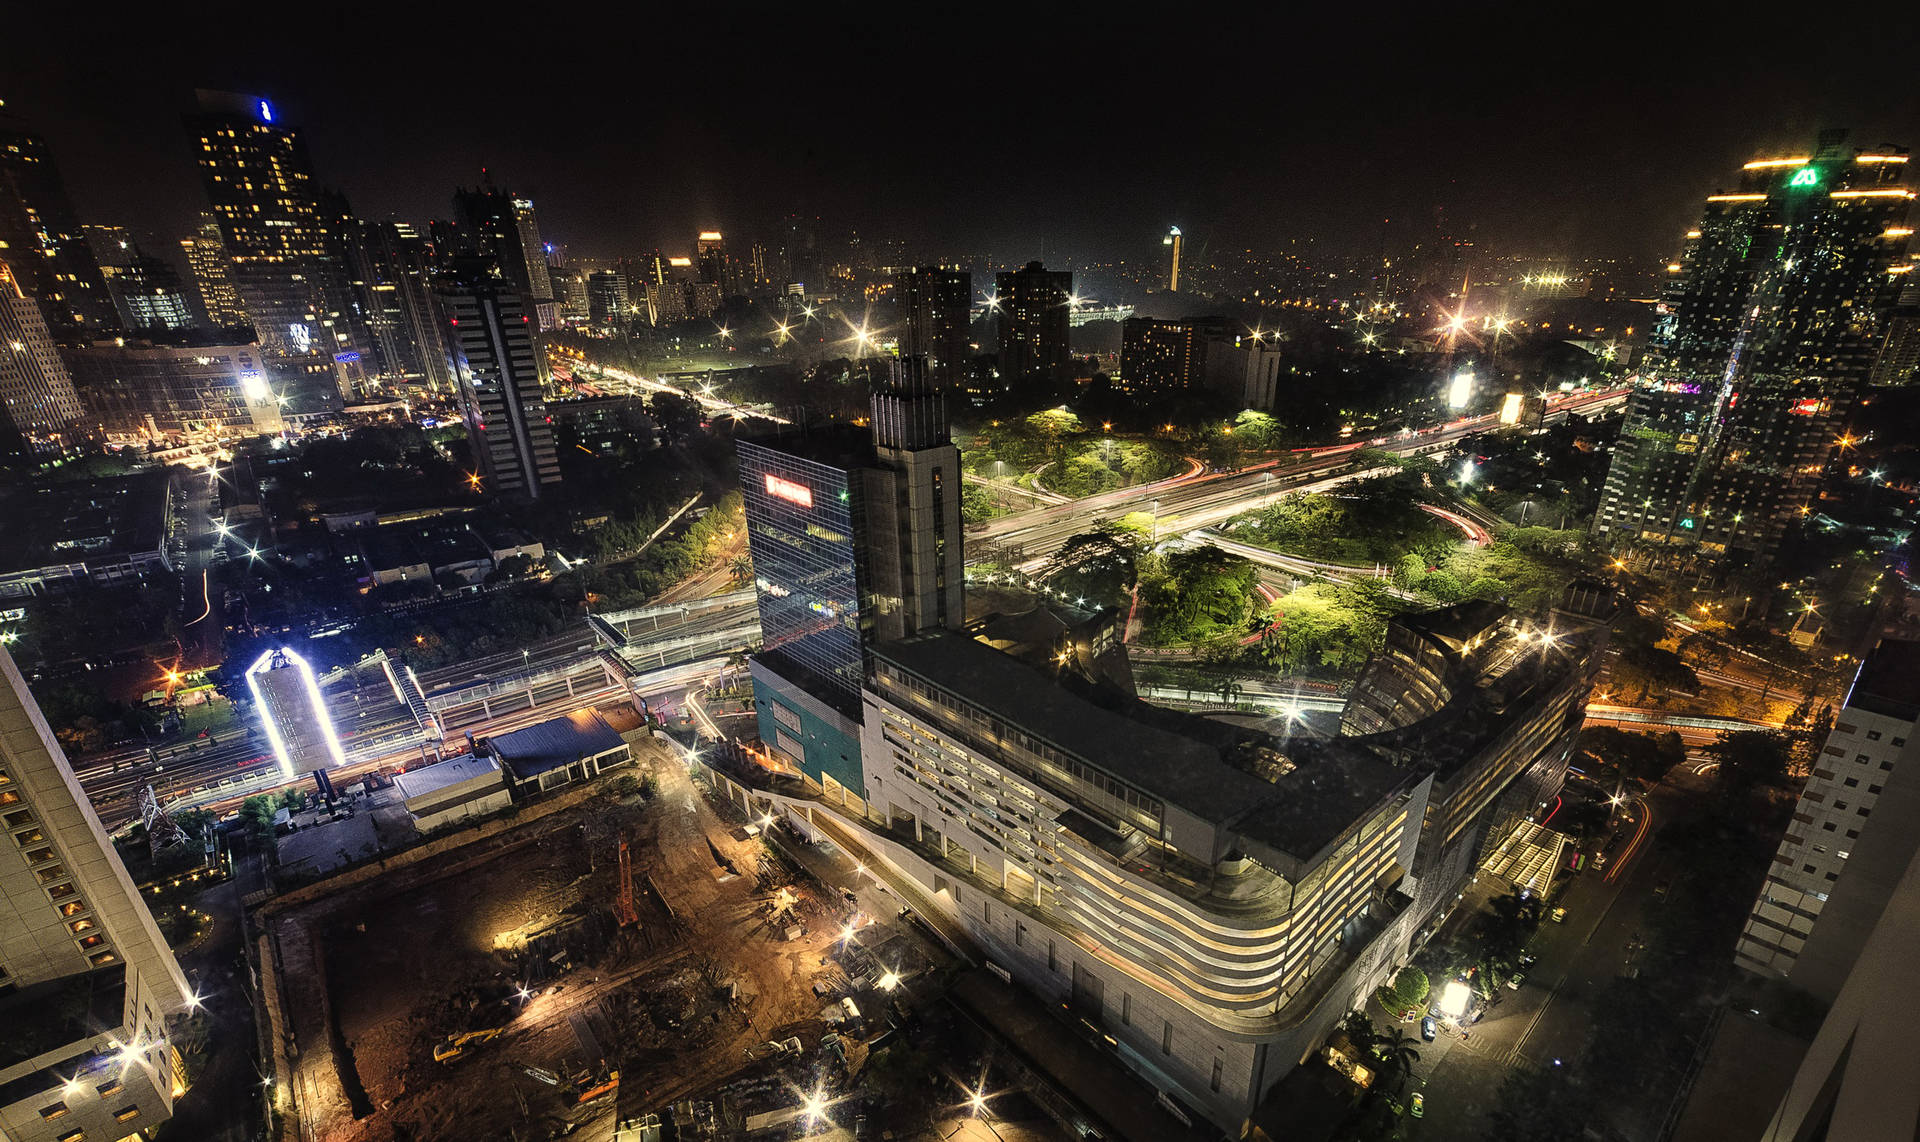 Jakartanachtlichter Wallpaper